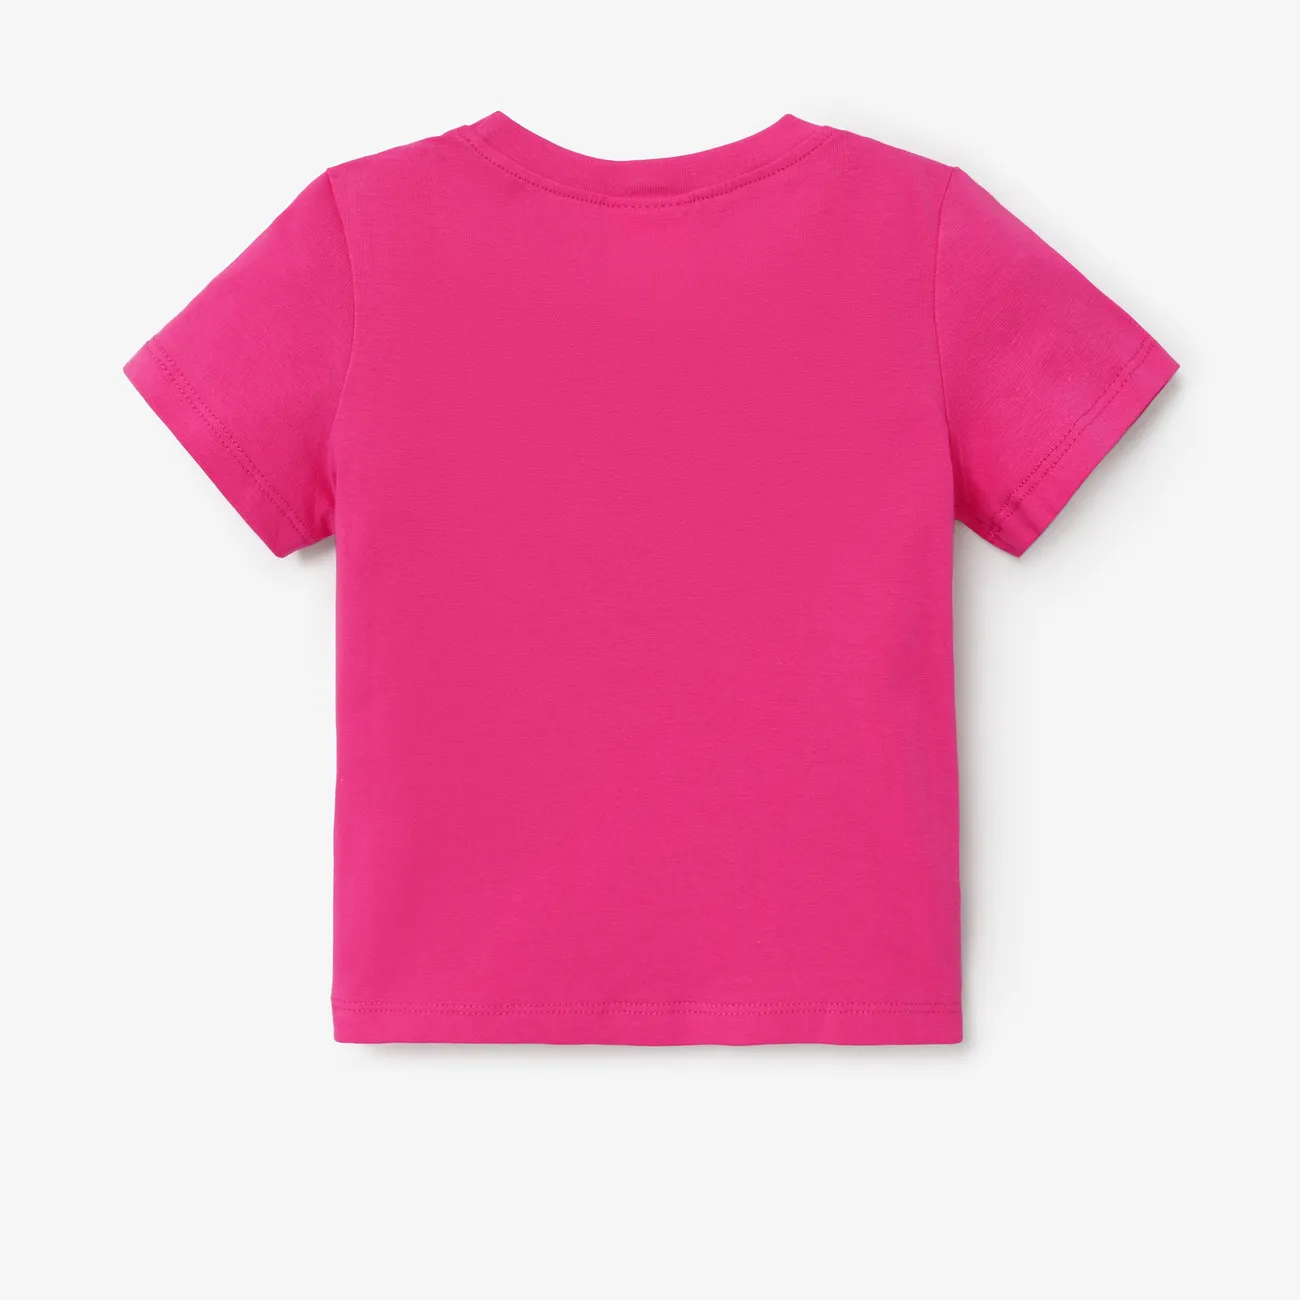 Barbie Menina Infantil T-shirts Roseo big image 1